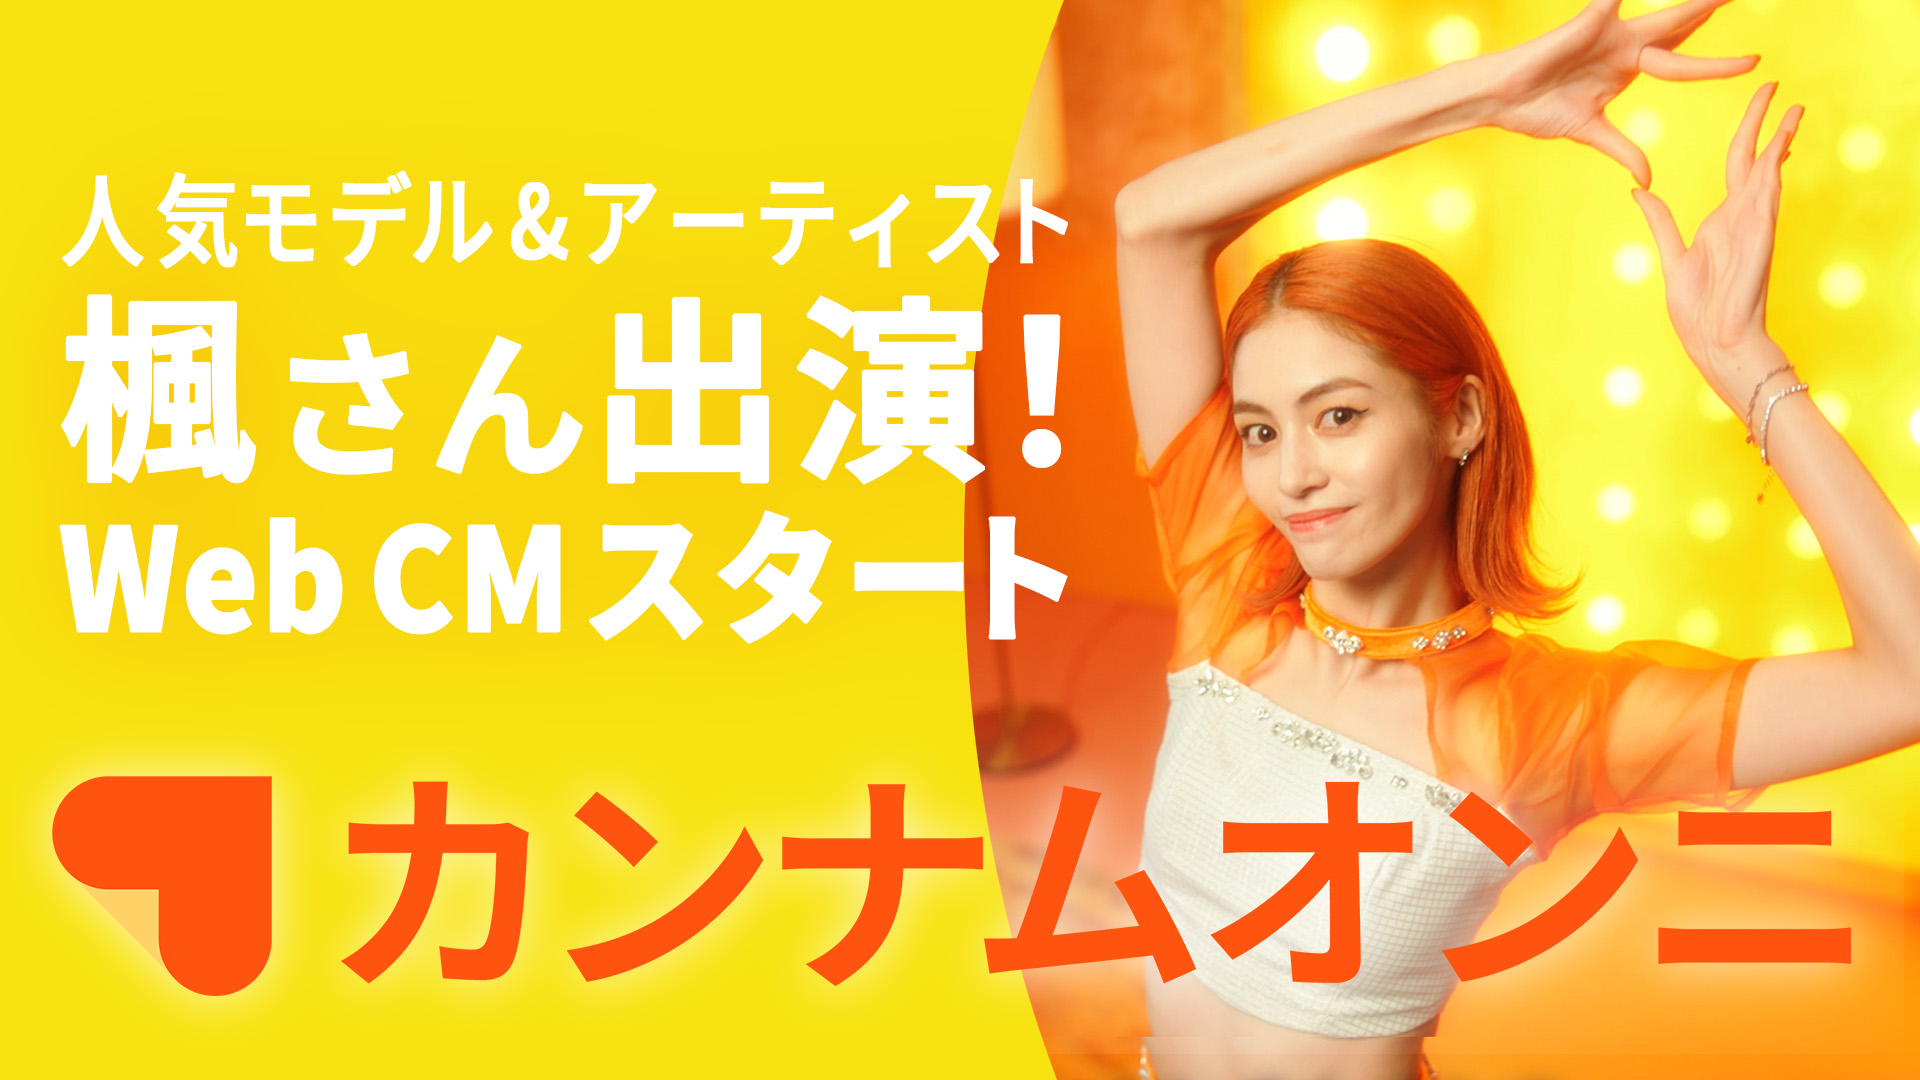 「CanCam」専属モデルの楓、韓国No.1美容アプリ『カンナムオンニ』新CM